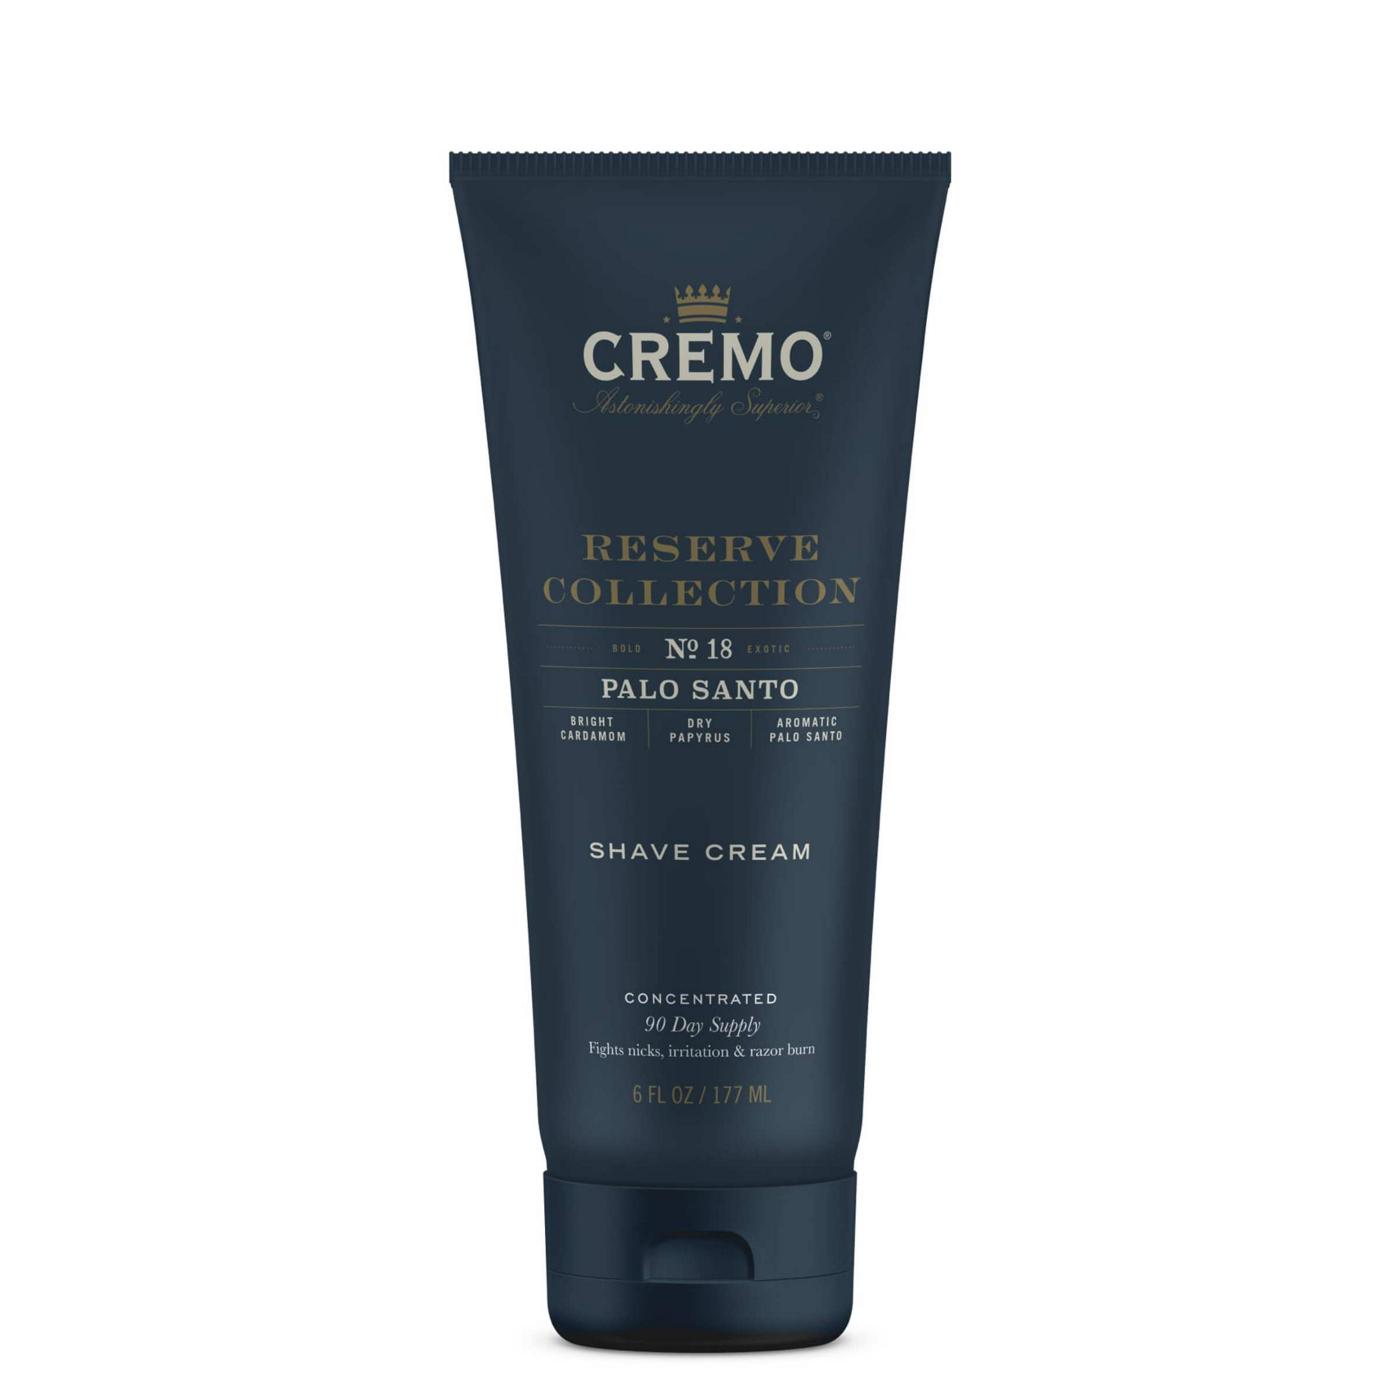 Cremo Shave Cream - Palo Santo; image 1 of 5